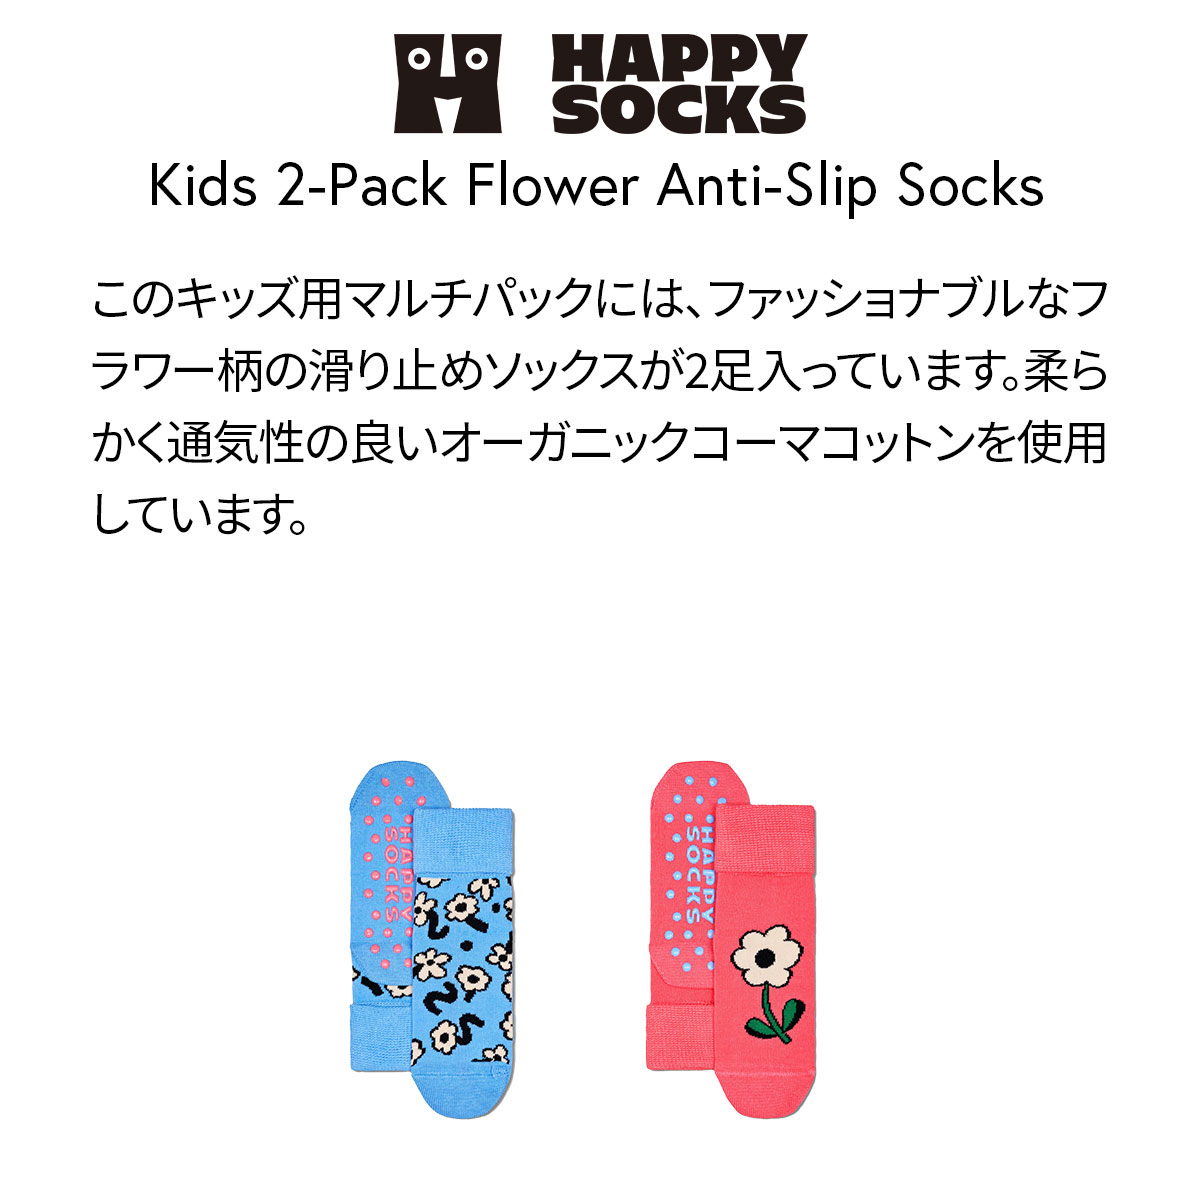 【2足セット】【24SS】Happy Socks ハッピーソックス Kids Flowers ( フラワーズ ) 足底滑り止め付き 2-Pack Low Socks 2足組 花柄 子供 ショート丈 綿混 ソックス KIDS ジュニア 